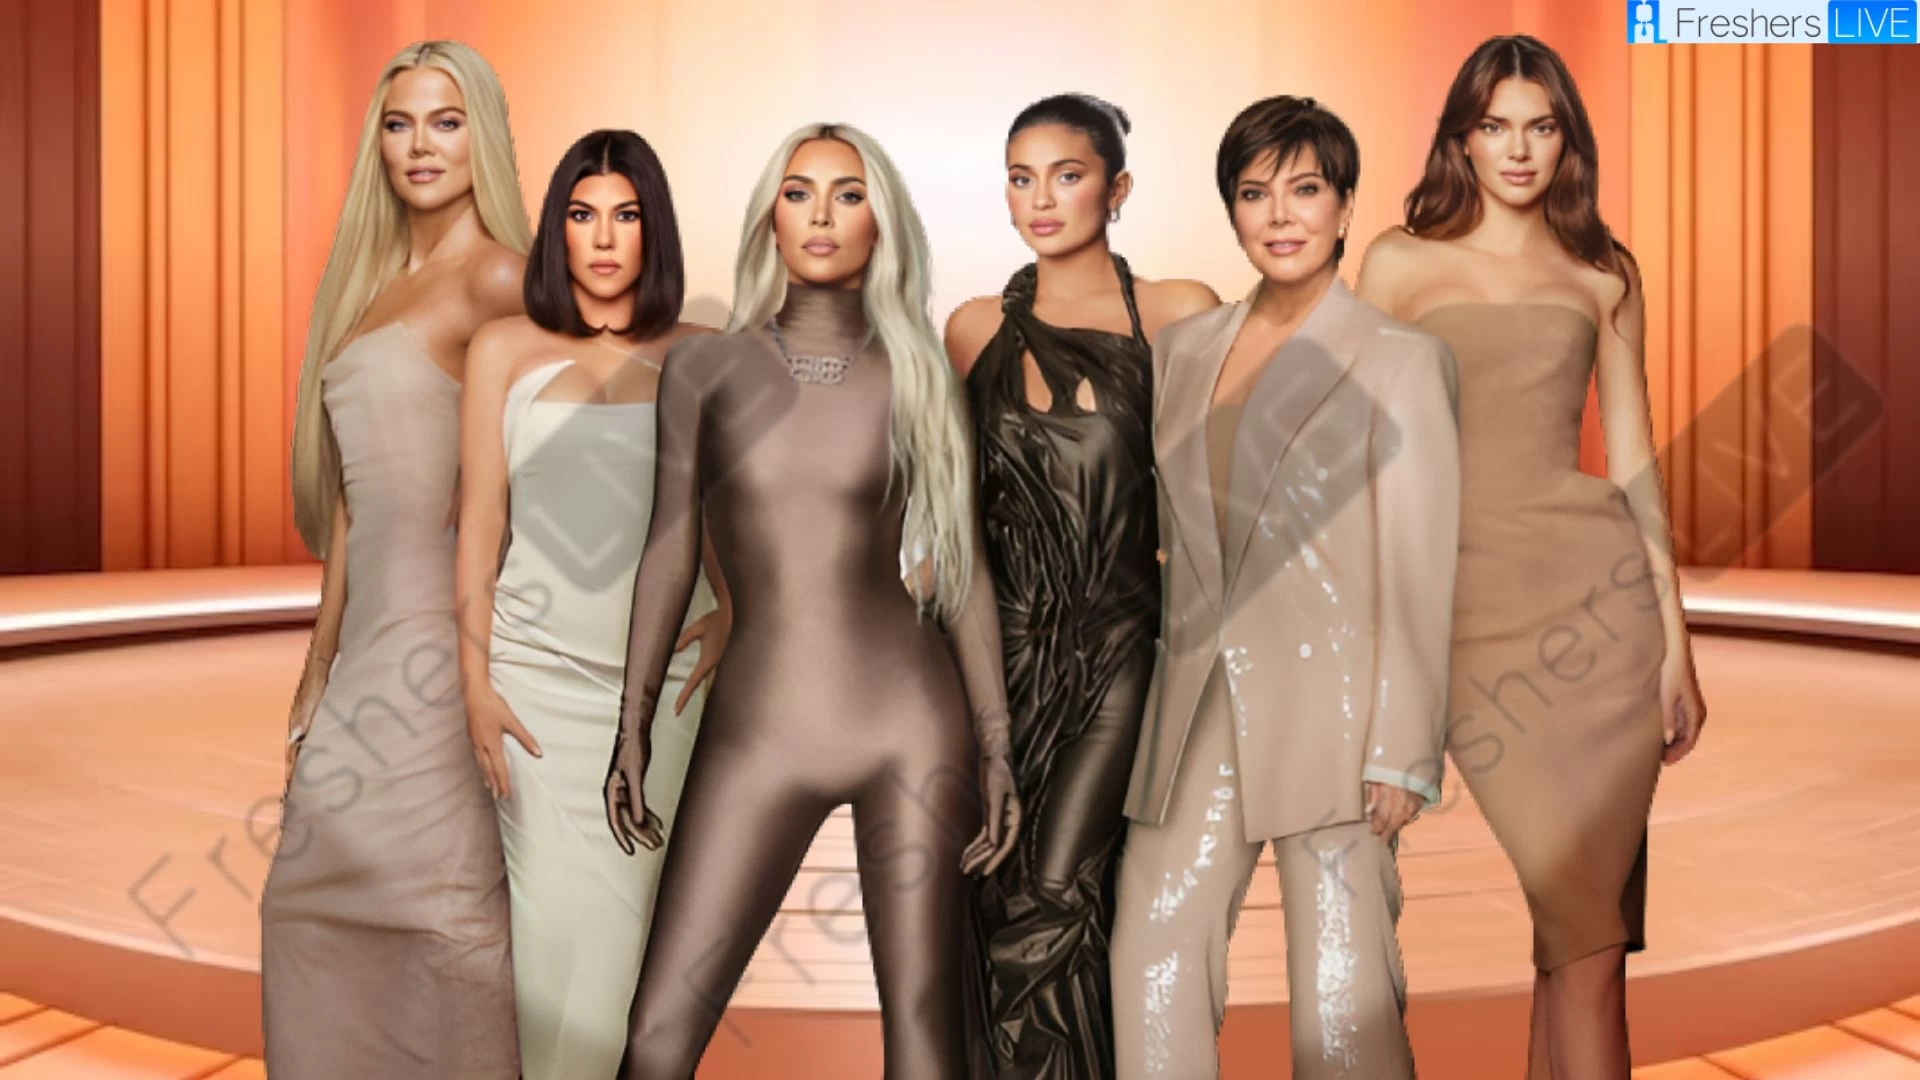 Fecha y hora de lanzamiento de la temporada 4 de Kardashians, cuenta regresiva, ¿cuándo saldrá?